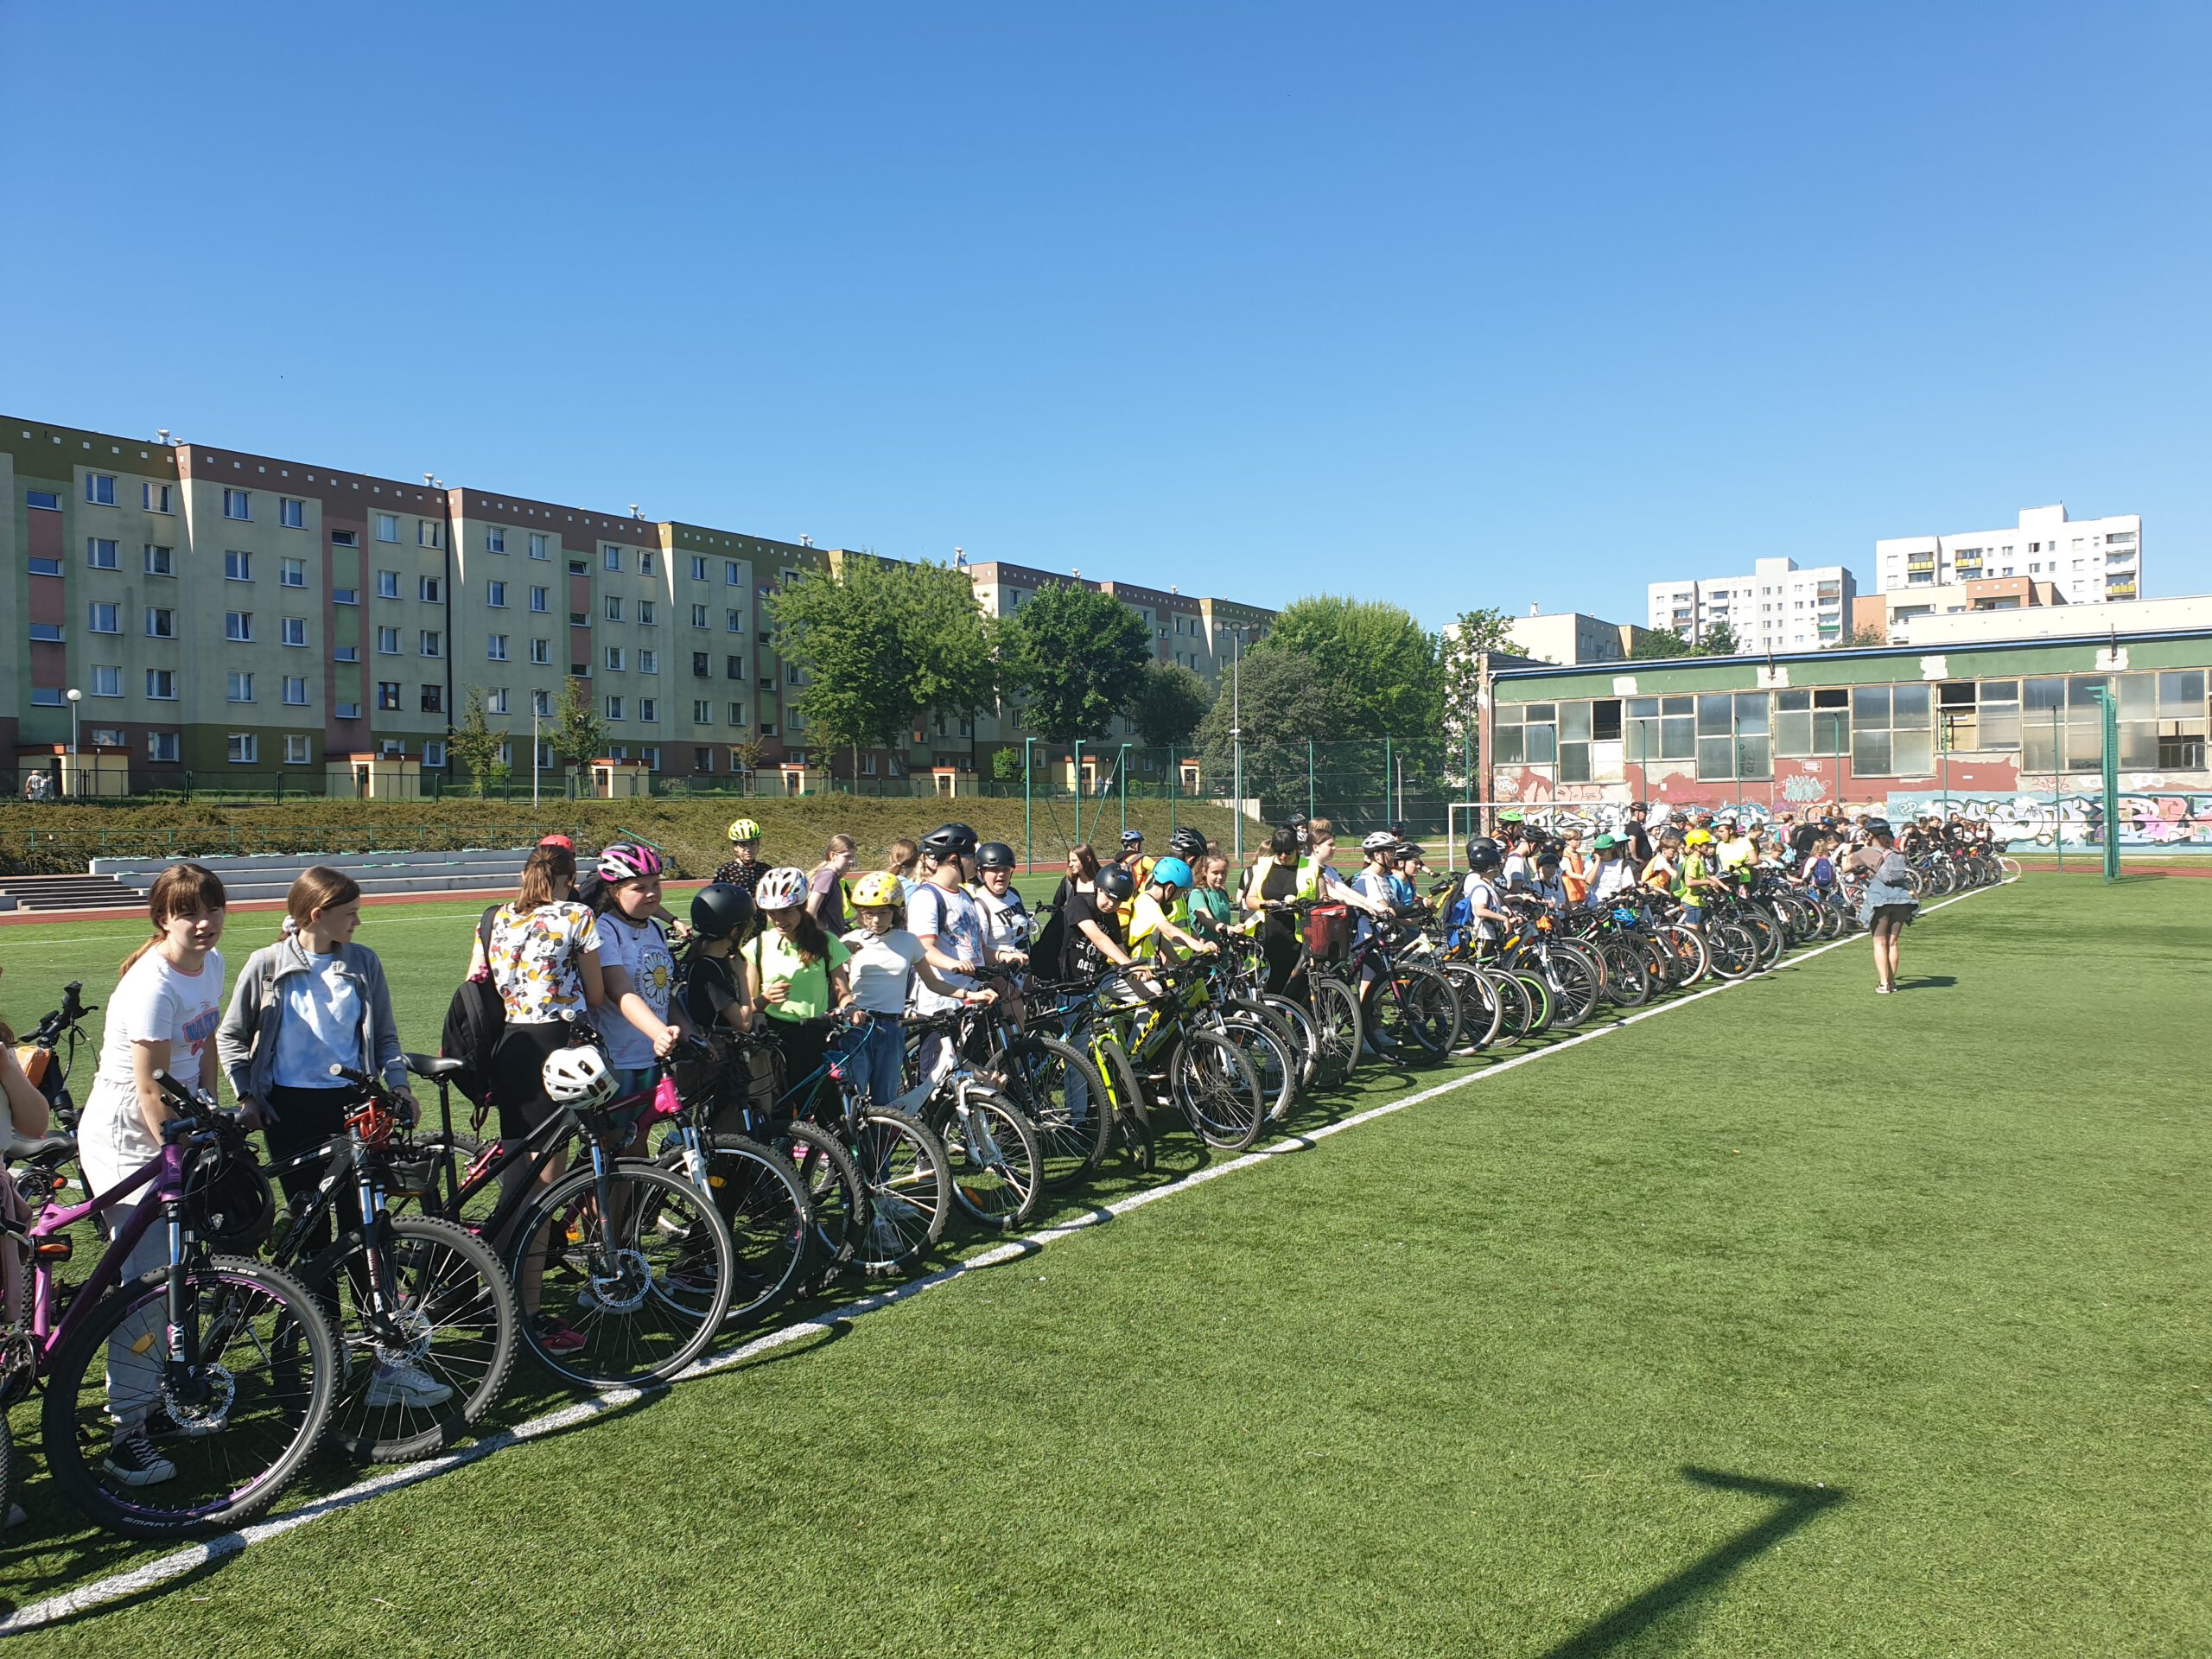 Bardzo liczna grupa rowerzystów stoi ustawiona na płycie boiska